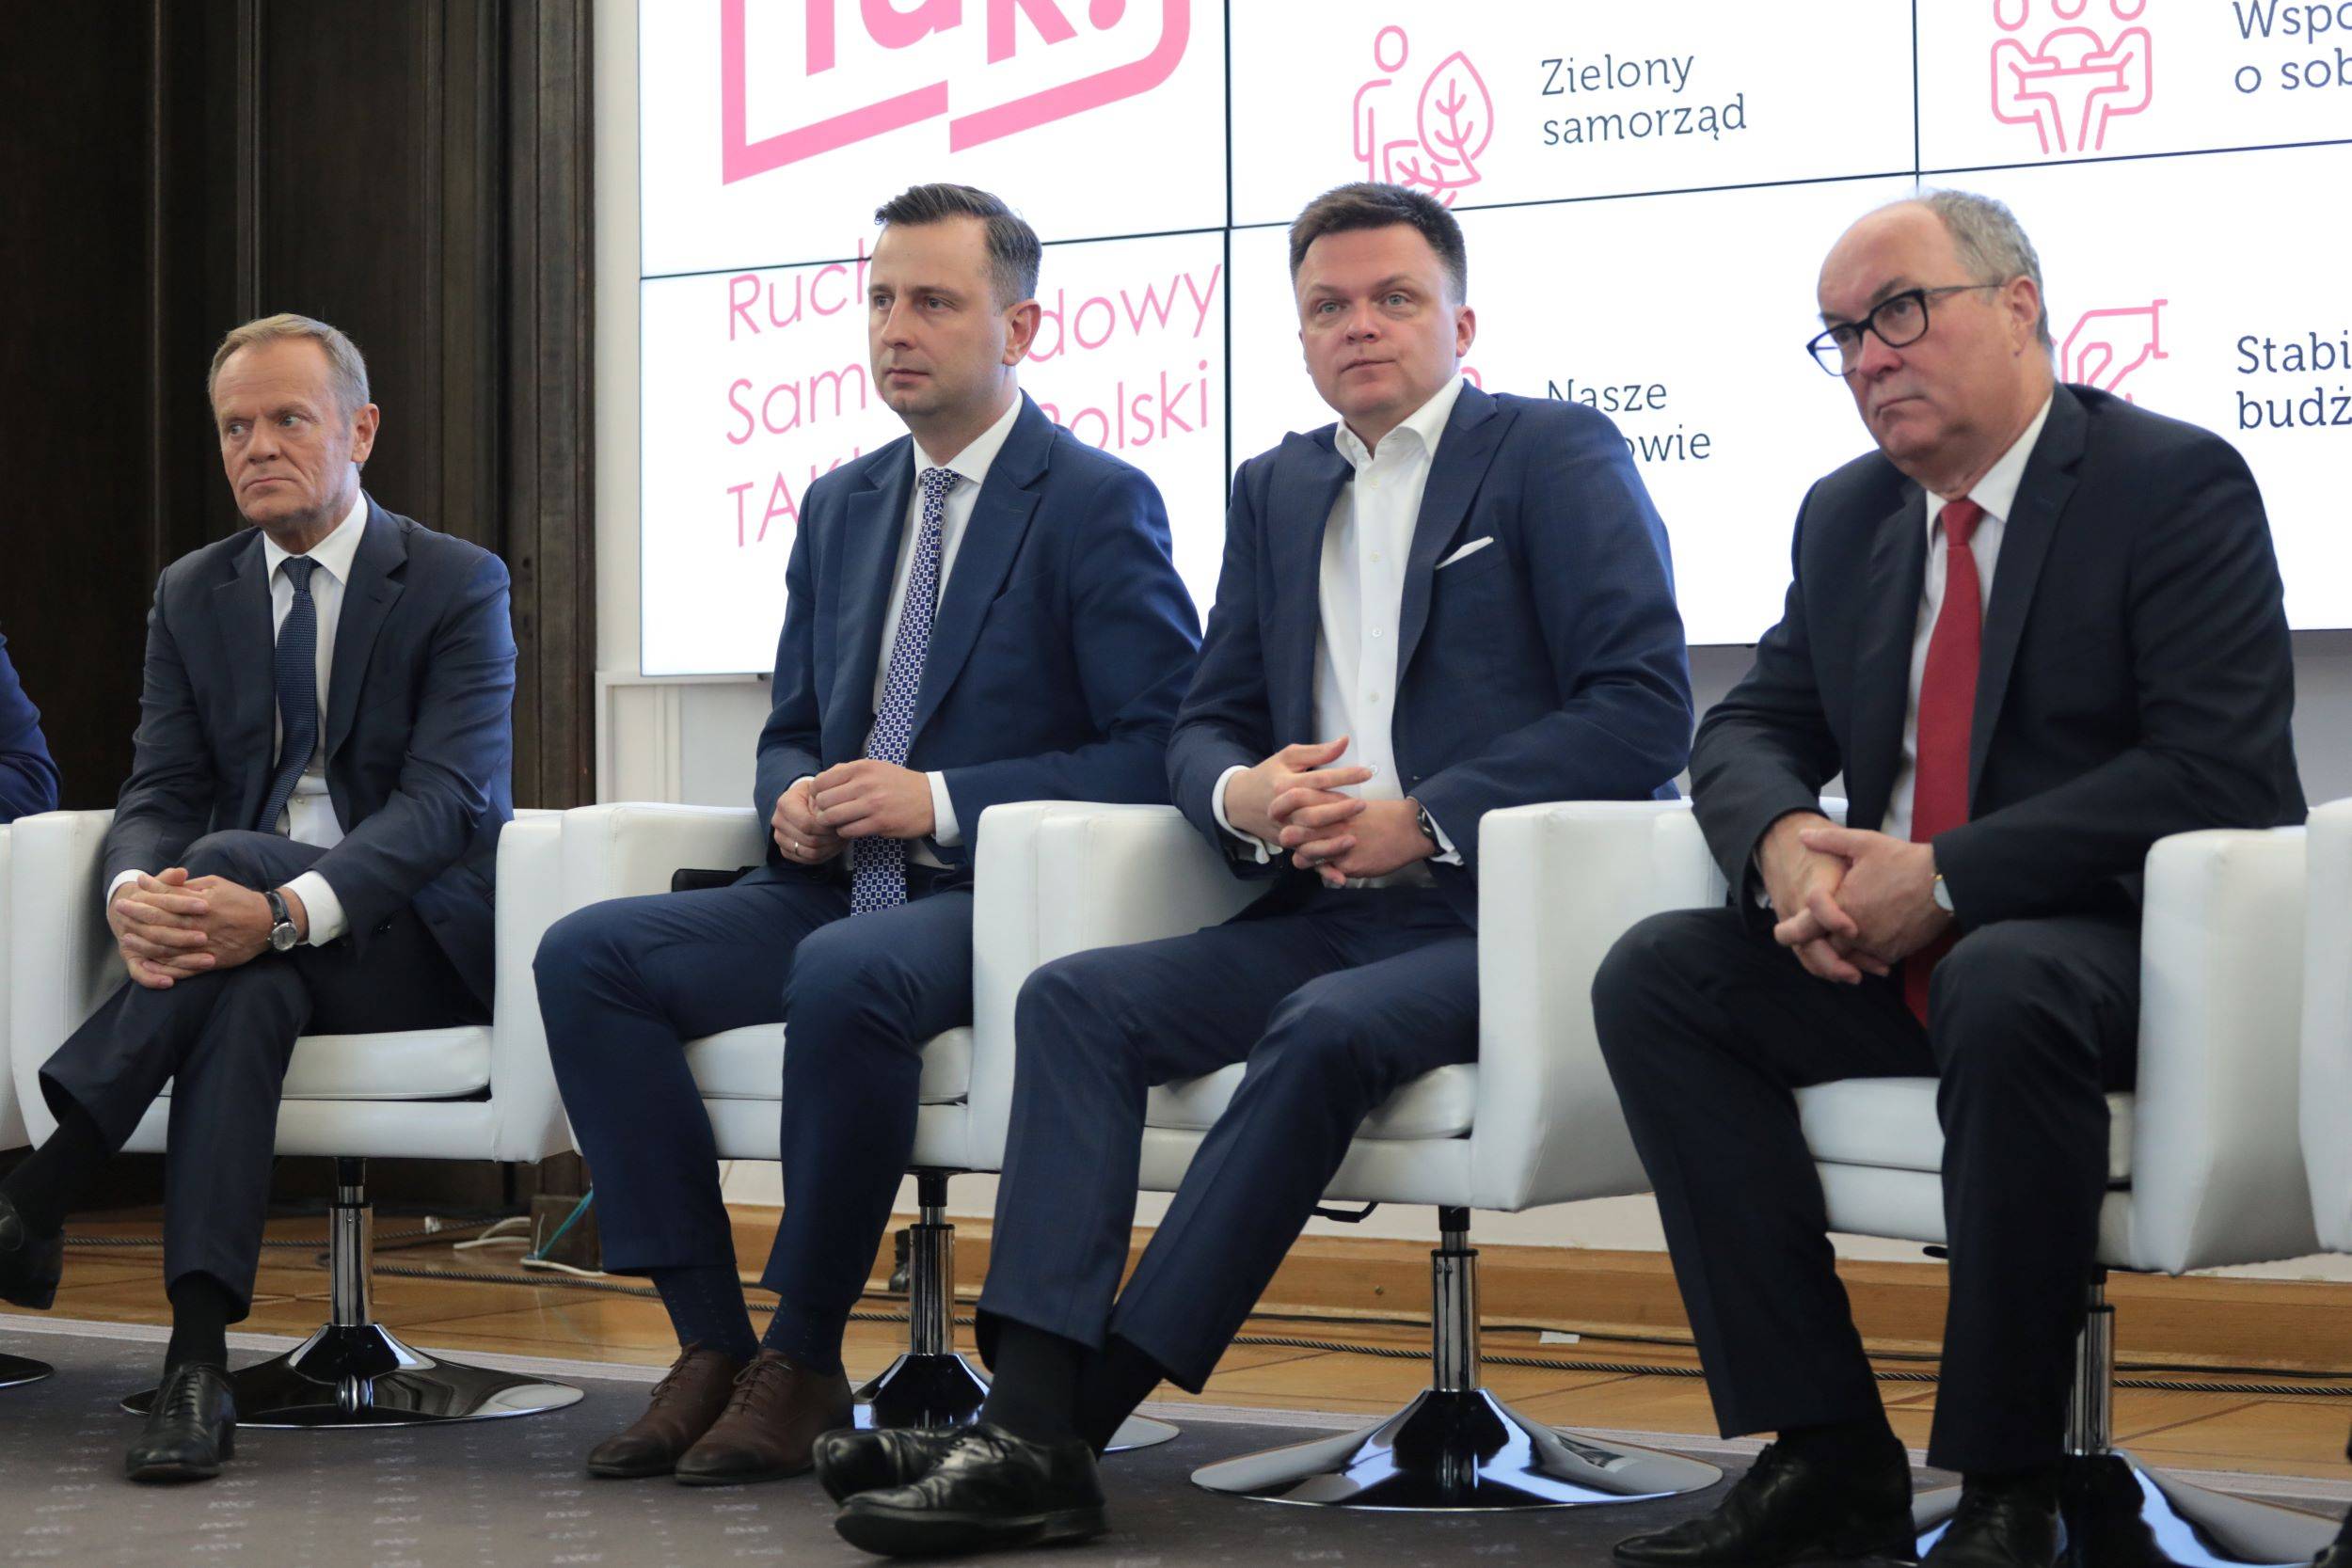 Liderzy opozycji: Tusk, Kosiniak-Kamysz, Hołownia, Czarzasty, maj 2022